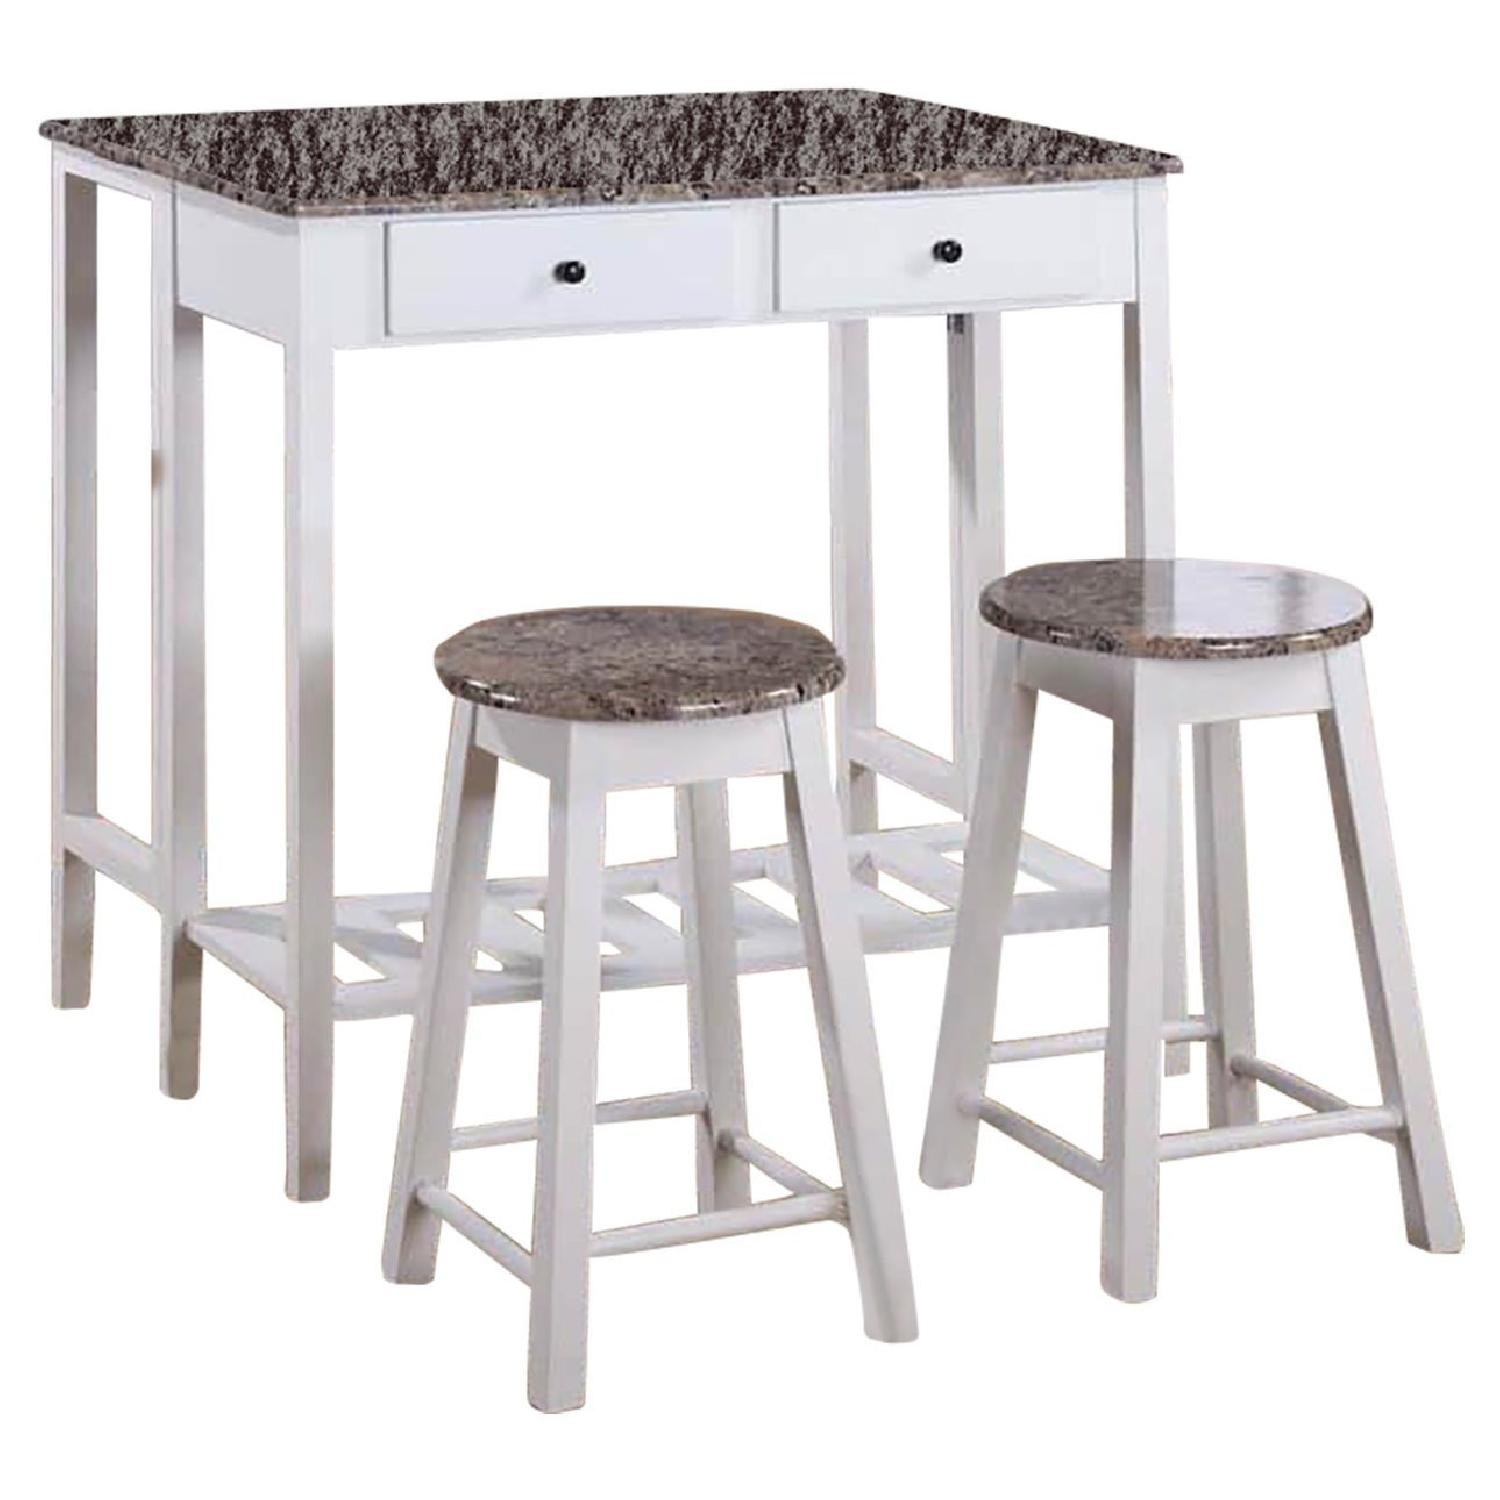 White stool table